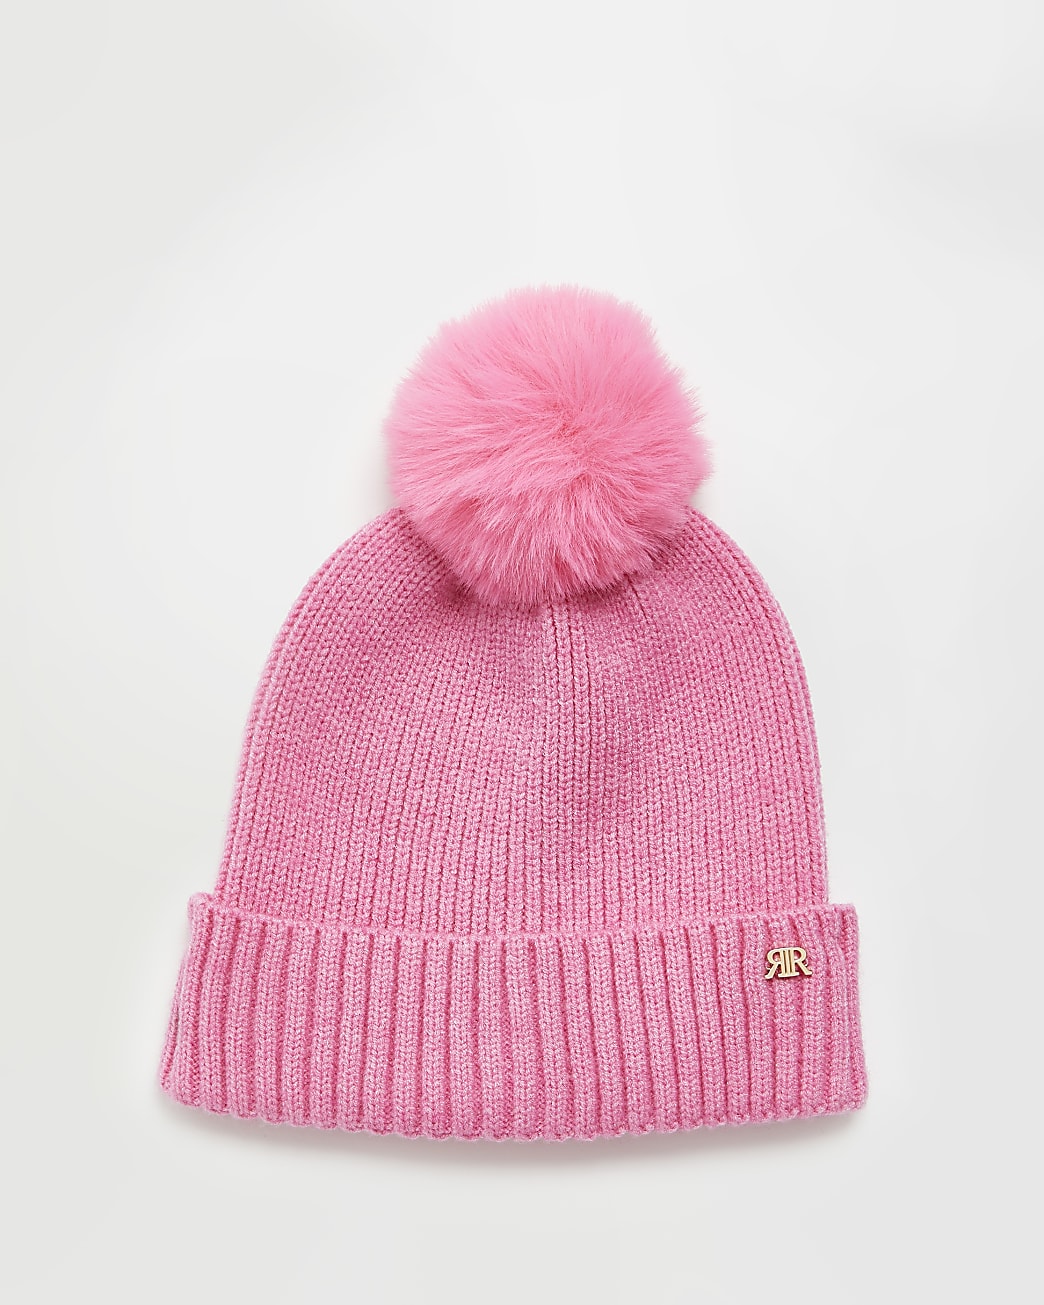 Girls pink neon beanie hat